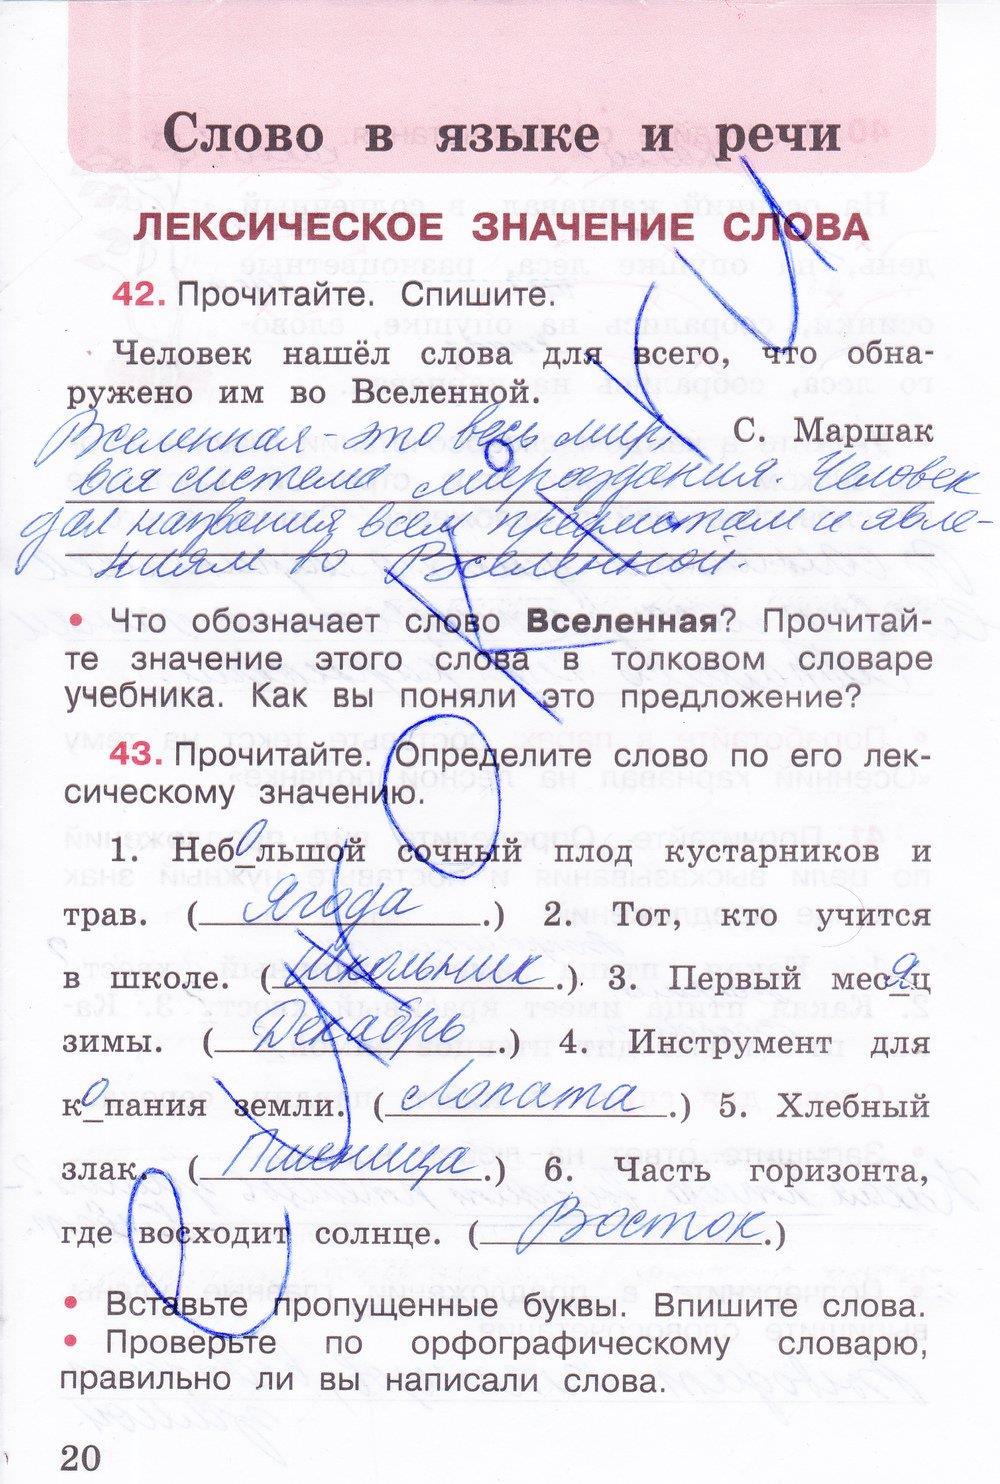 Русский язык четвертого класса страница 20. Русский язык рабочая тетрадь 3 класс 1 часть страница 20.